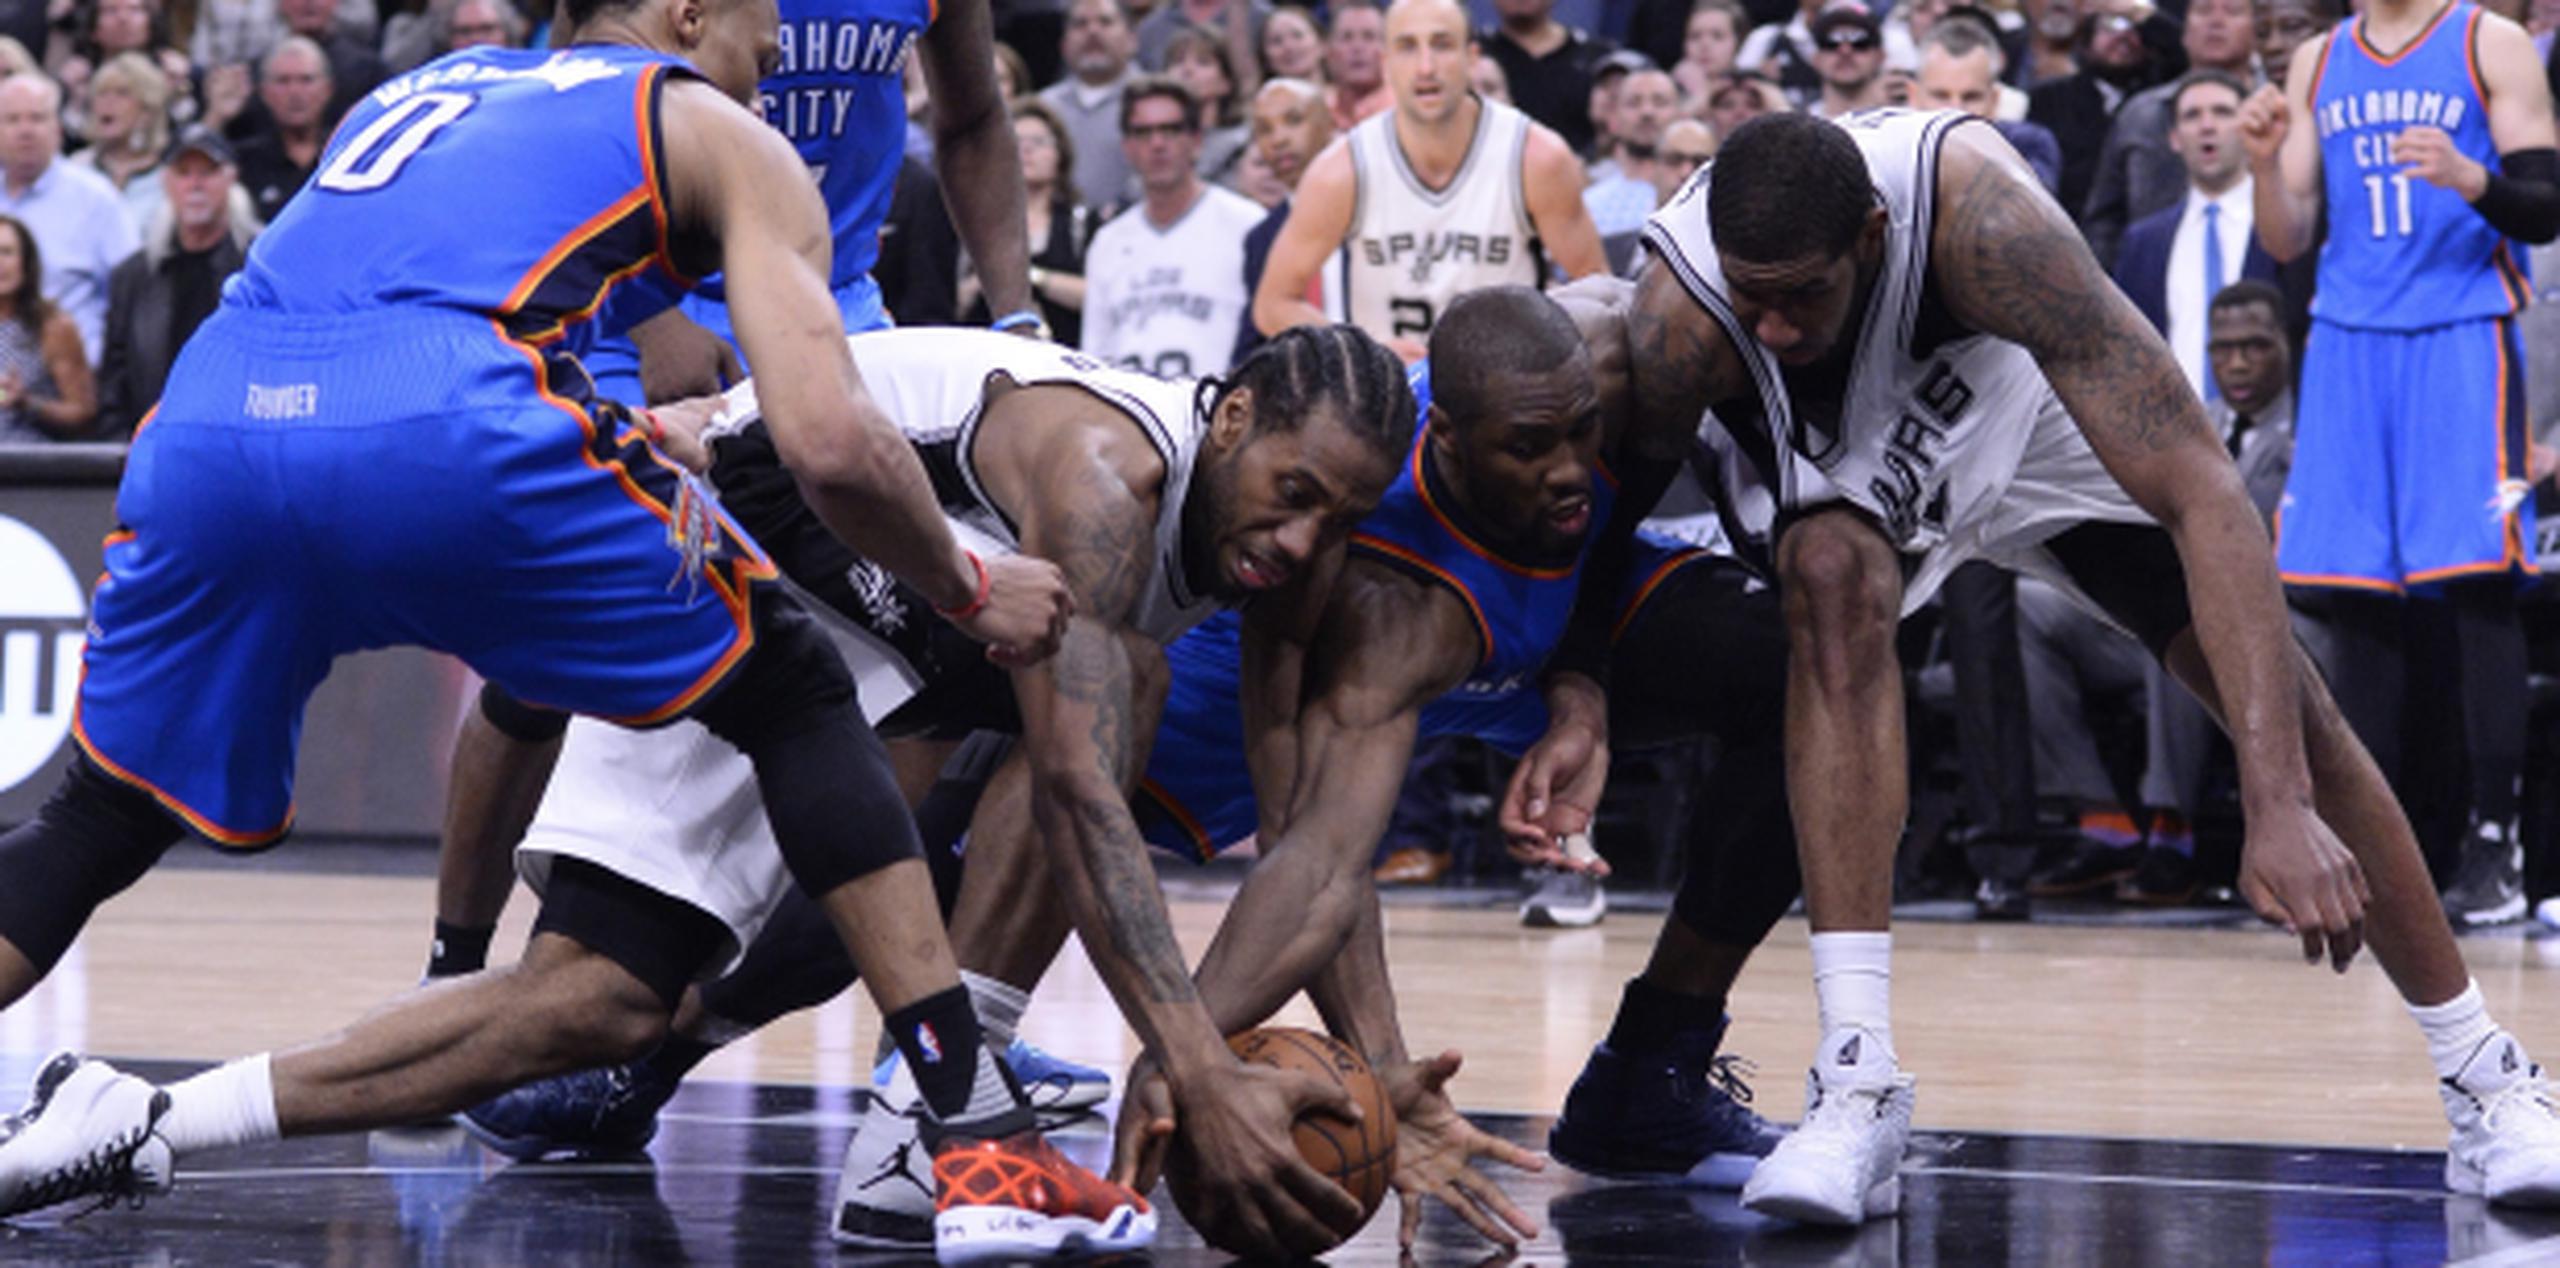 ¿Es la lucha libre? No, es un juego de playoffs entre los Spurs y el Thunder. (EFE)